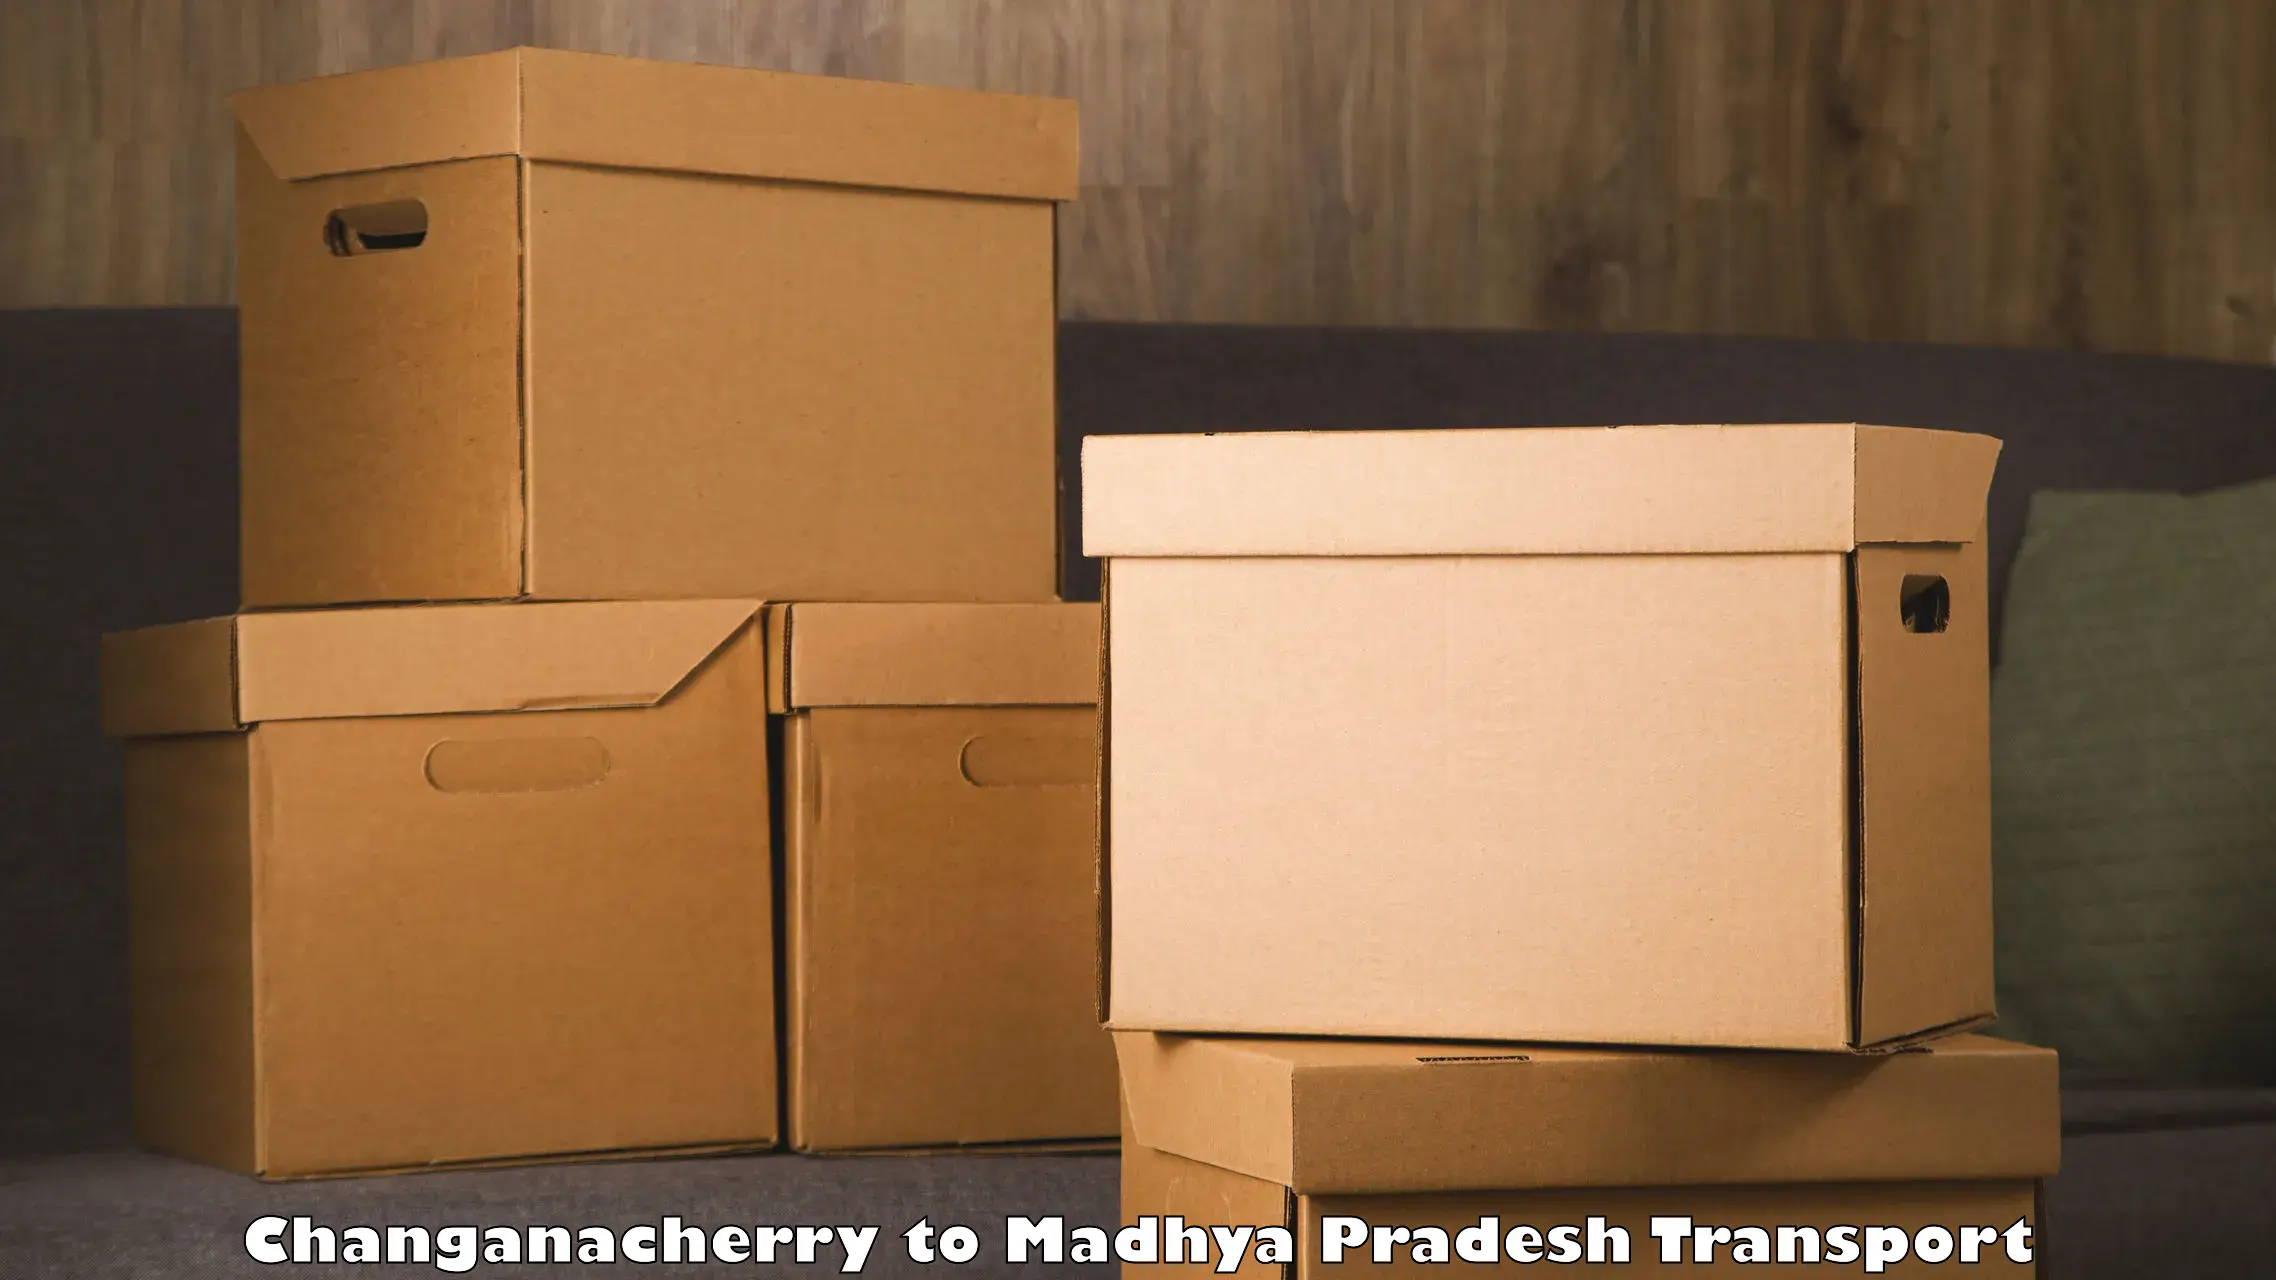 Shipping partner Changanacherry to Alirajpur